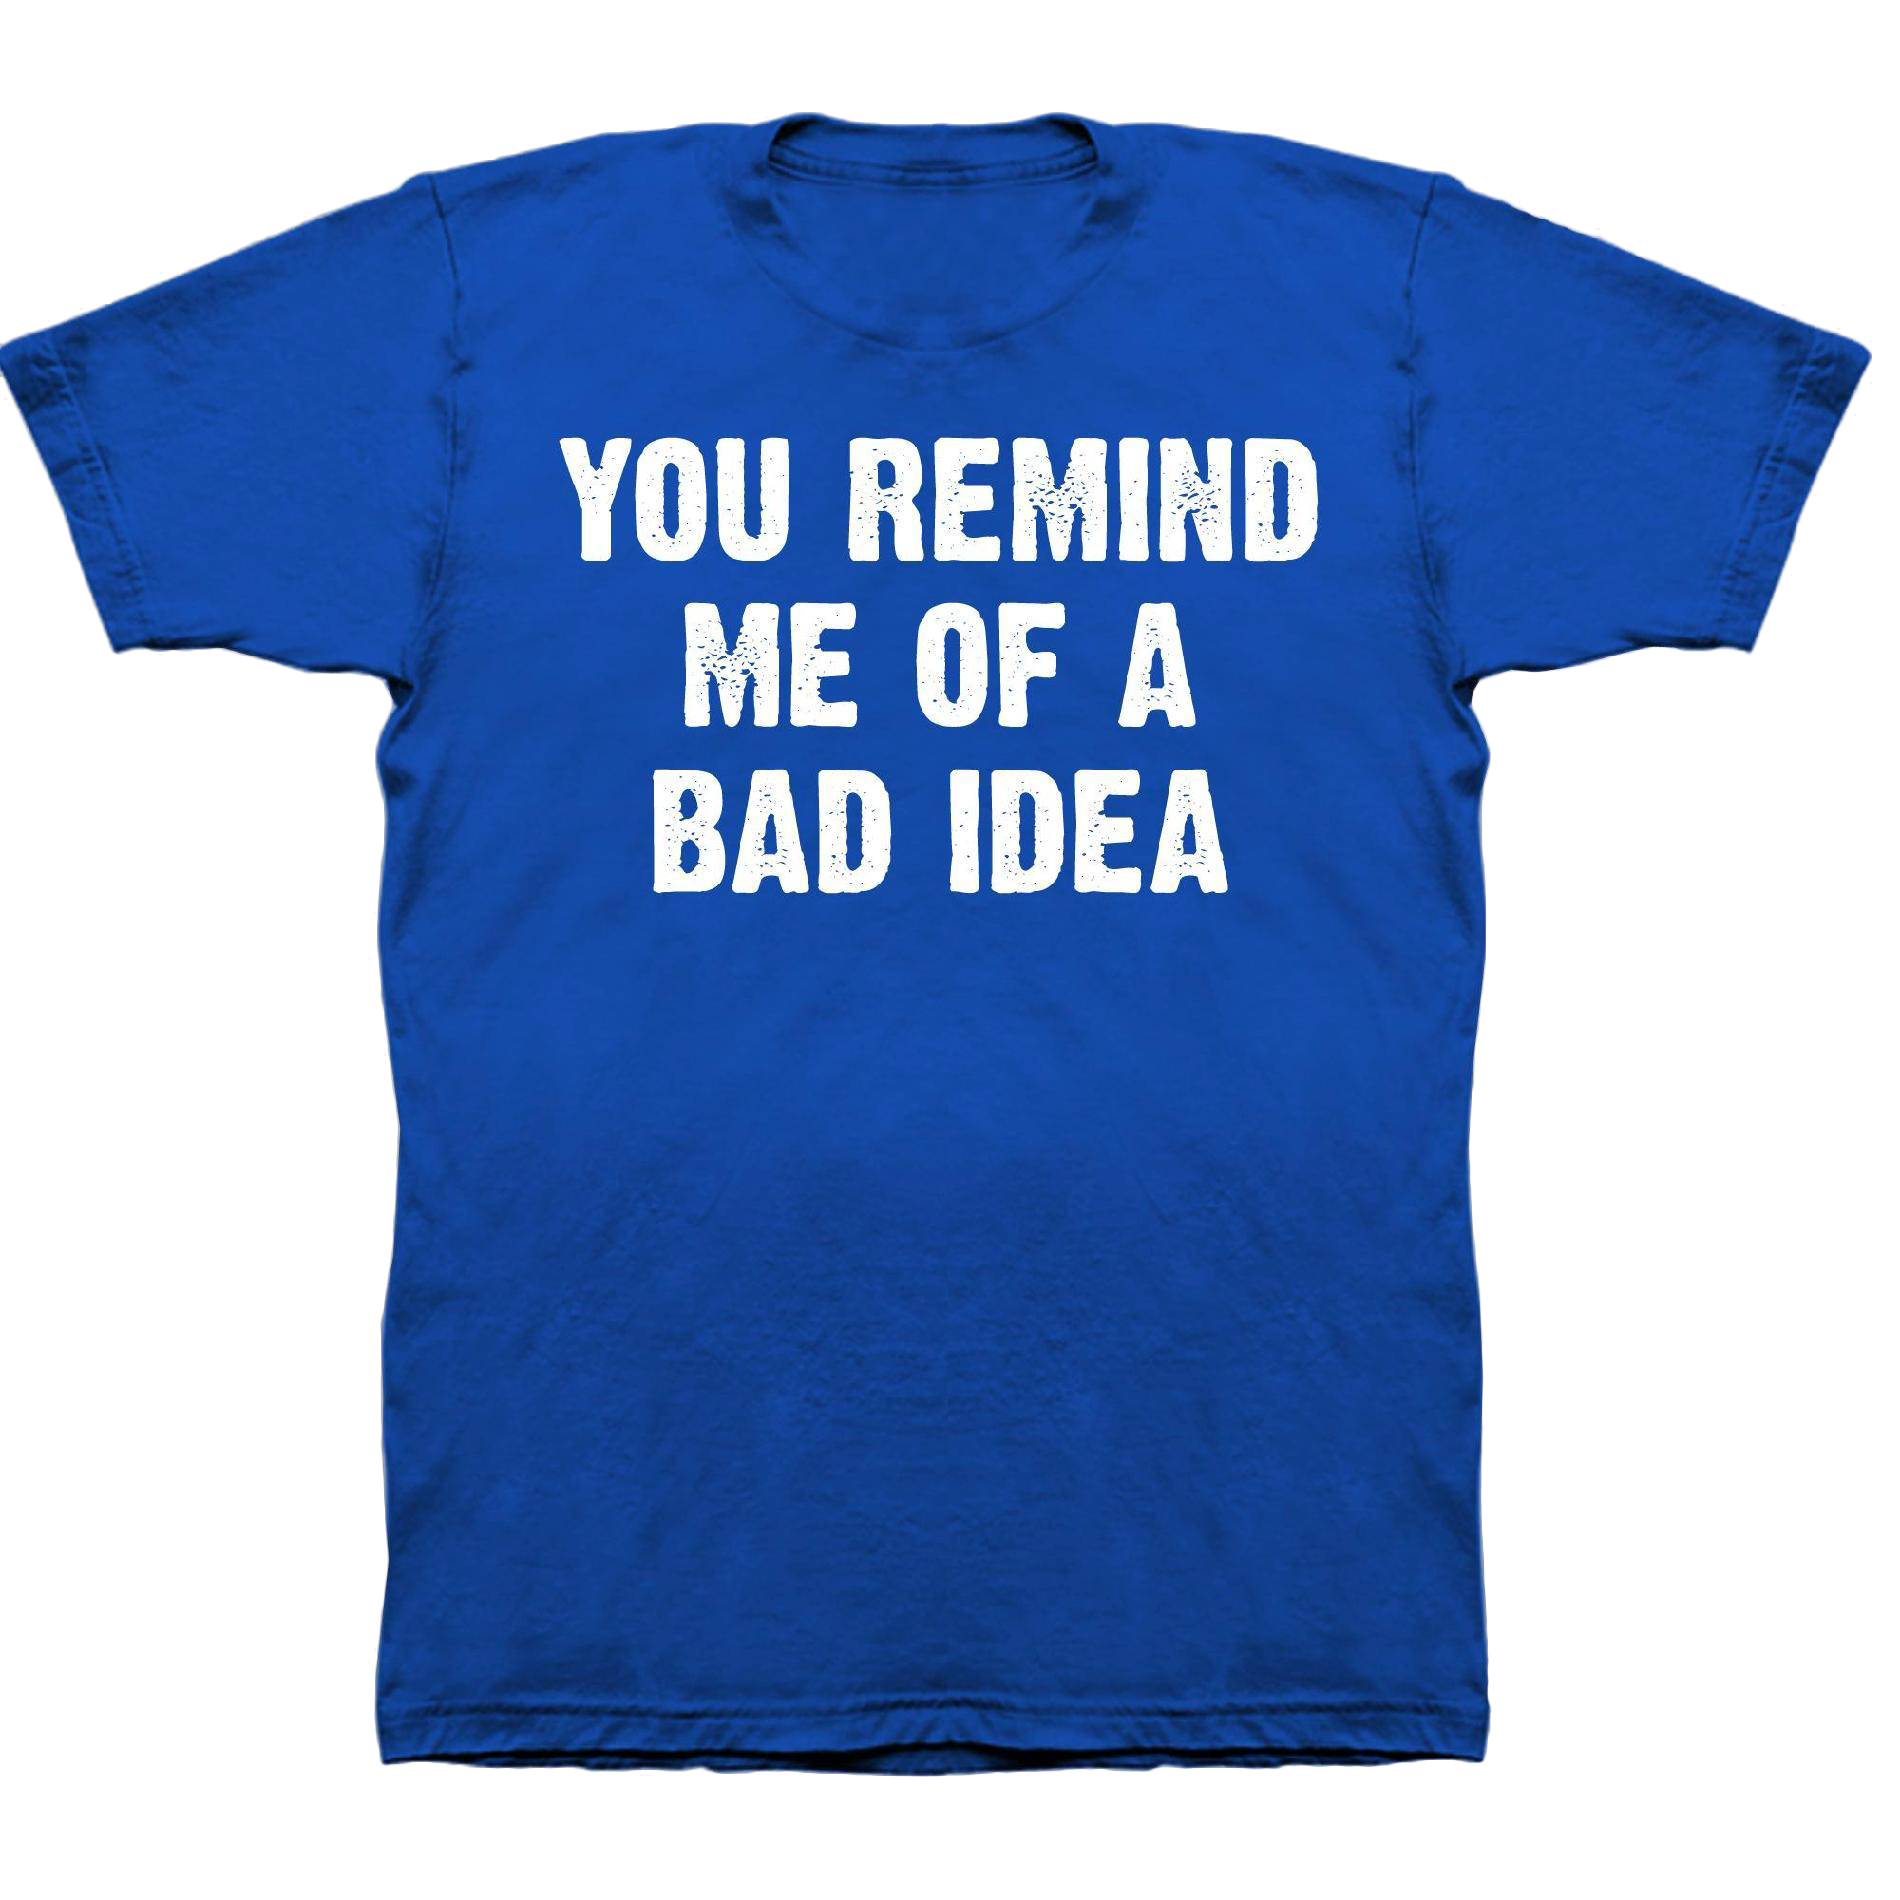 Men's Big & Tall Graphic T-Shirt - Bad Idea